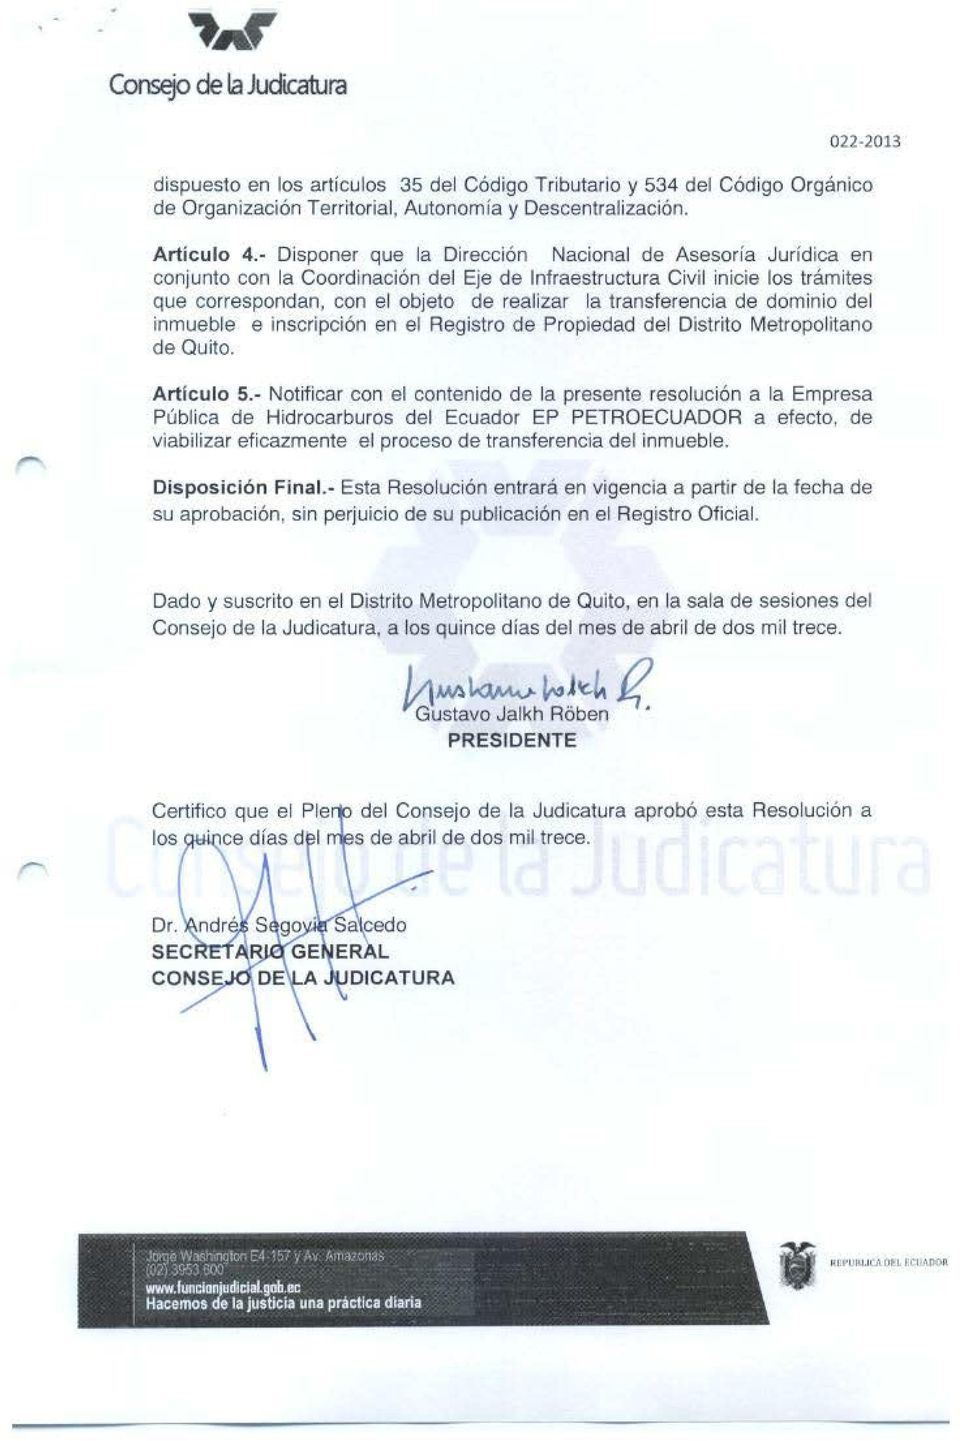 transferencia de dominio del inmueble e inscripción en el Registro de Propiedad del Distrito Metropolitano de Quito. r Articulo 5.